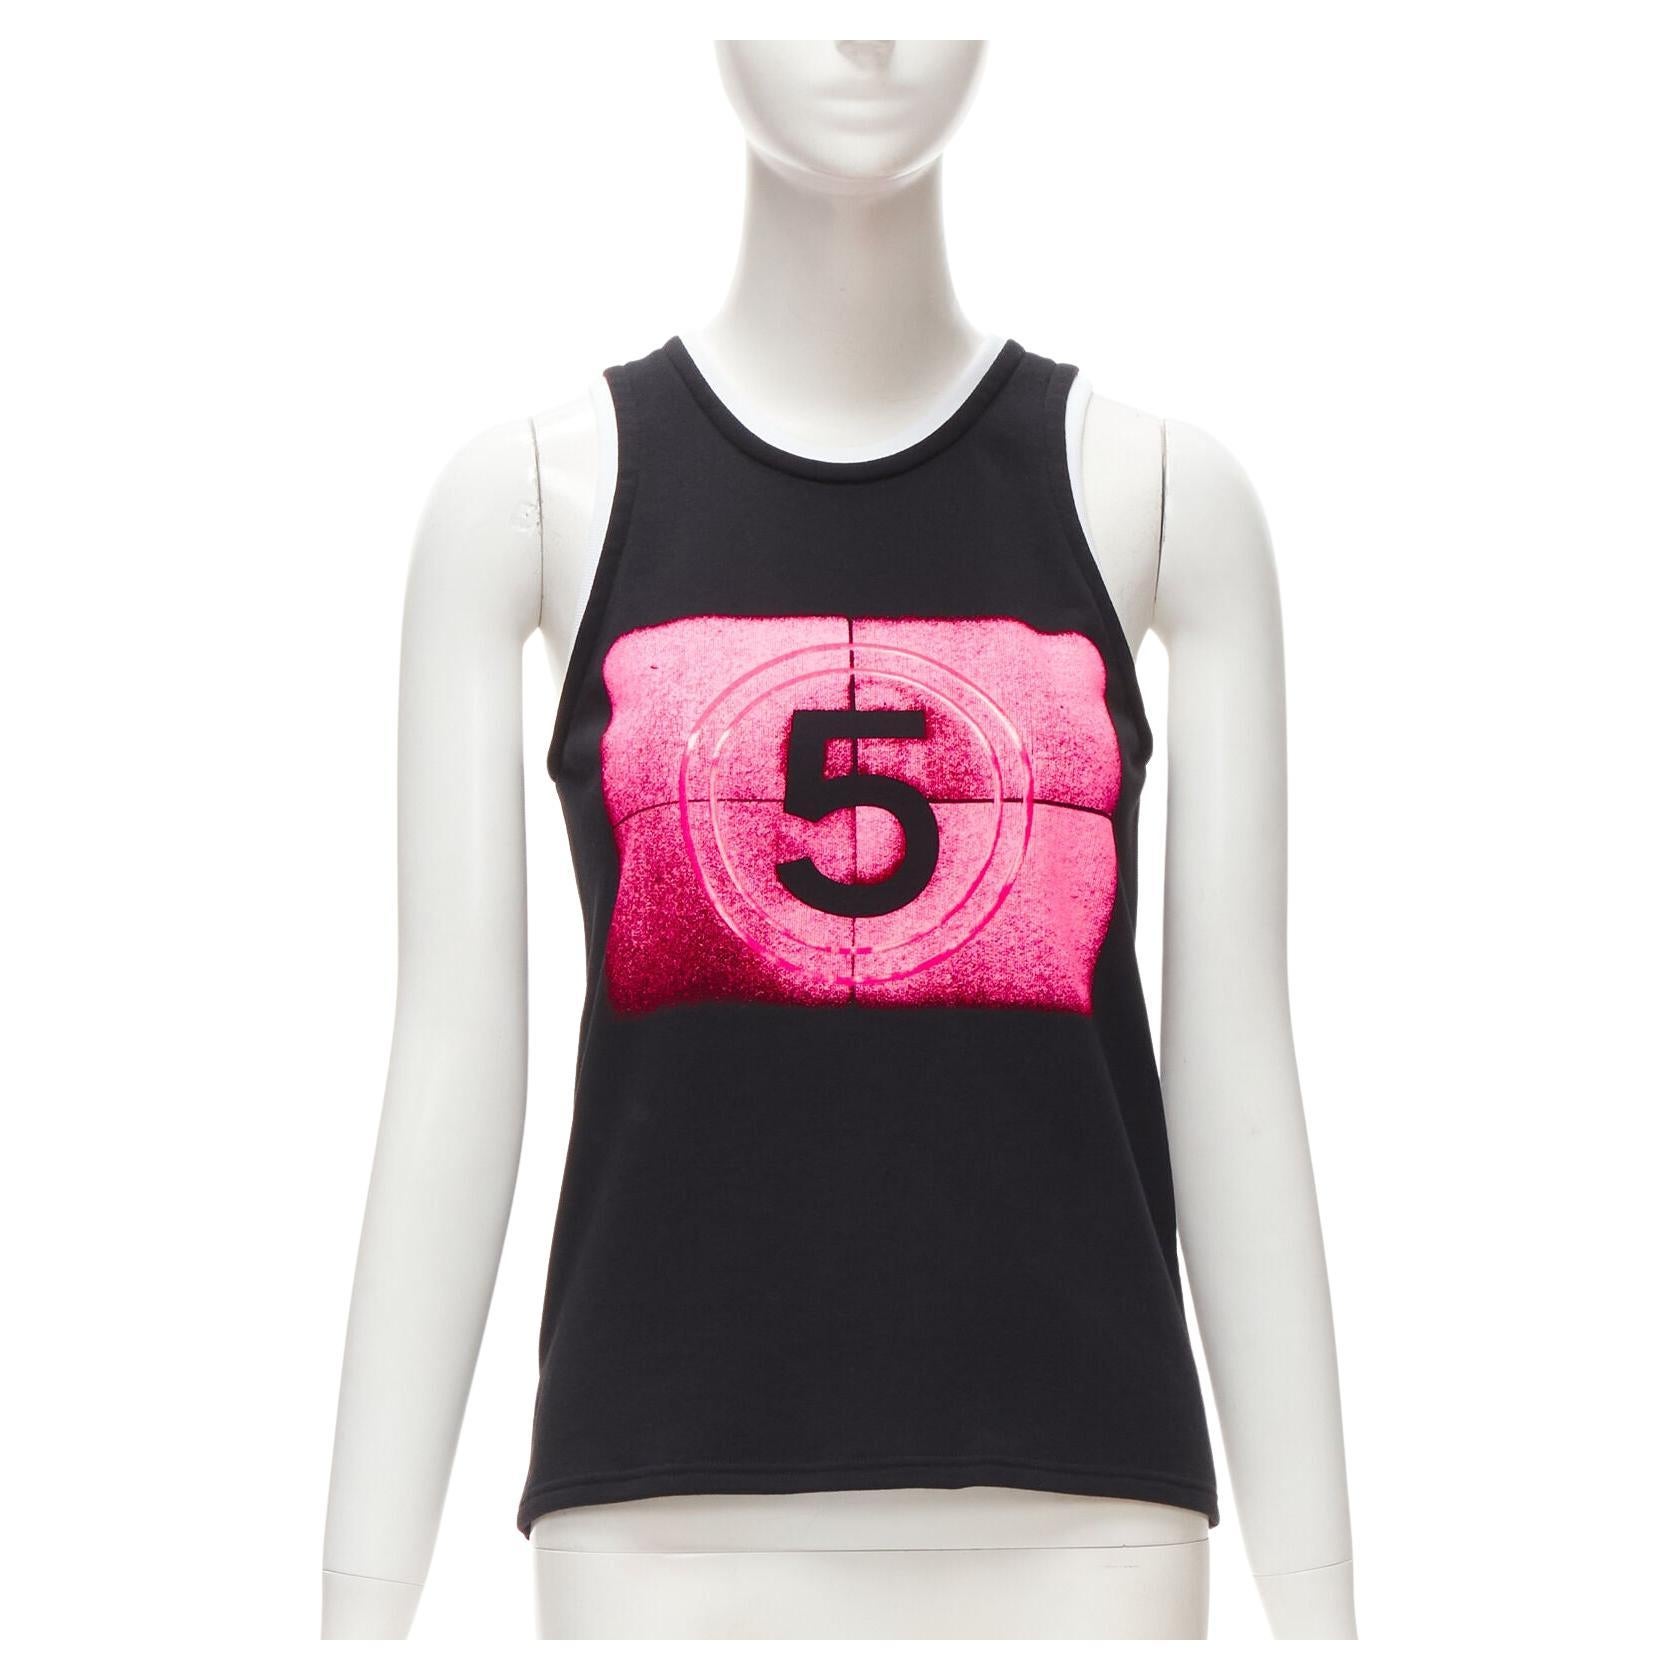 Chanel 21S No.5 Black White Neon Pink Print Cotton Tank Top FR34 Xs